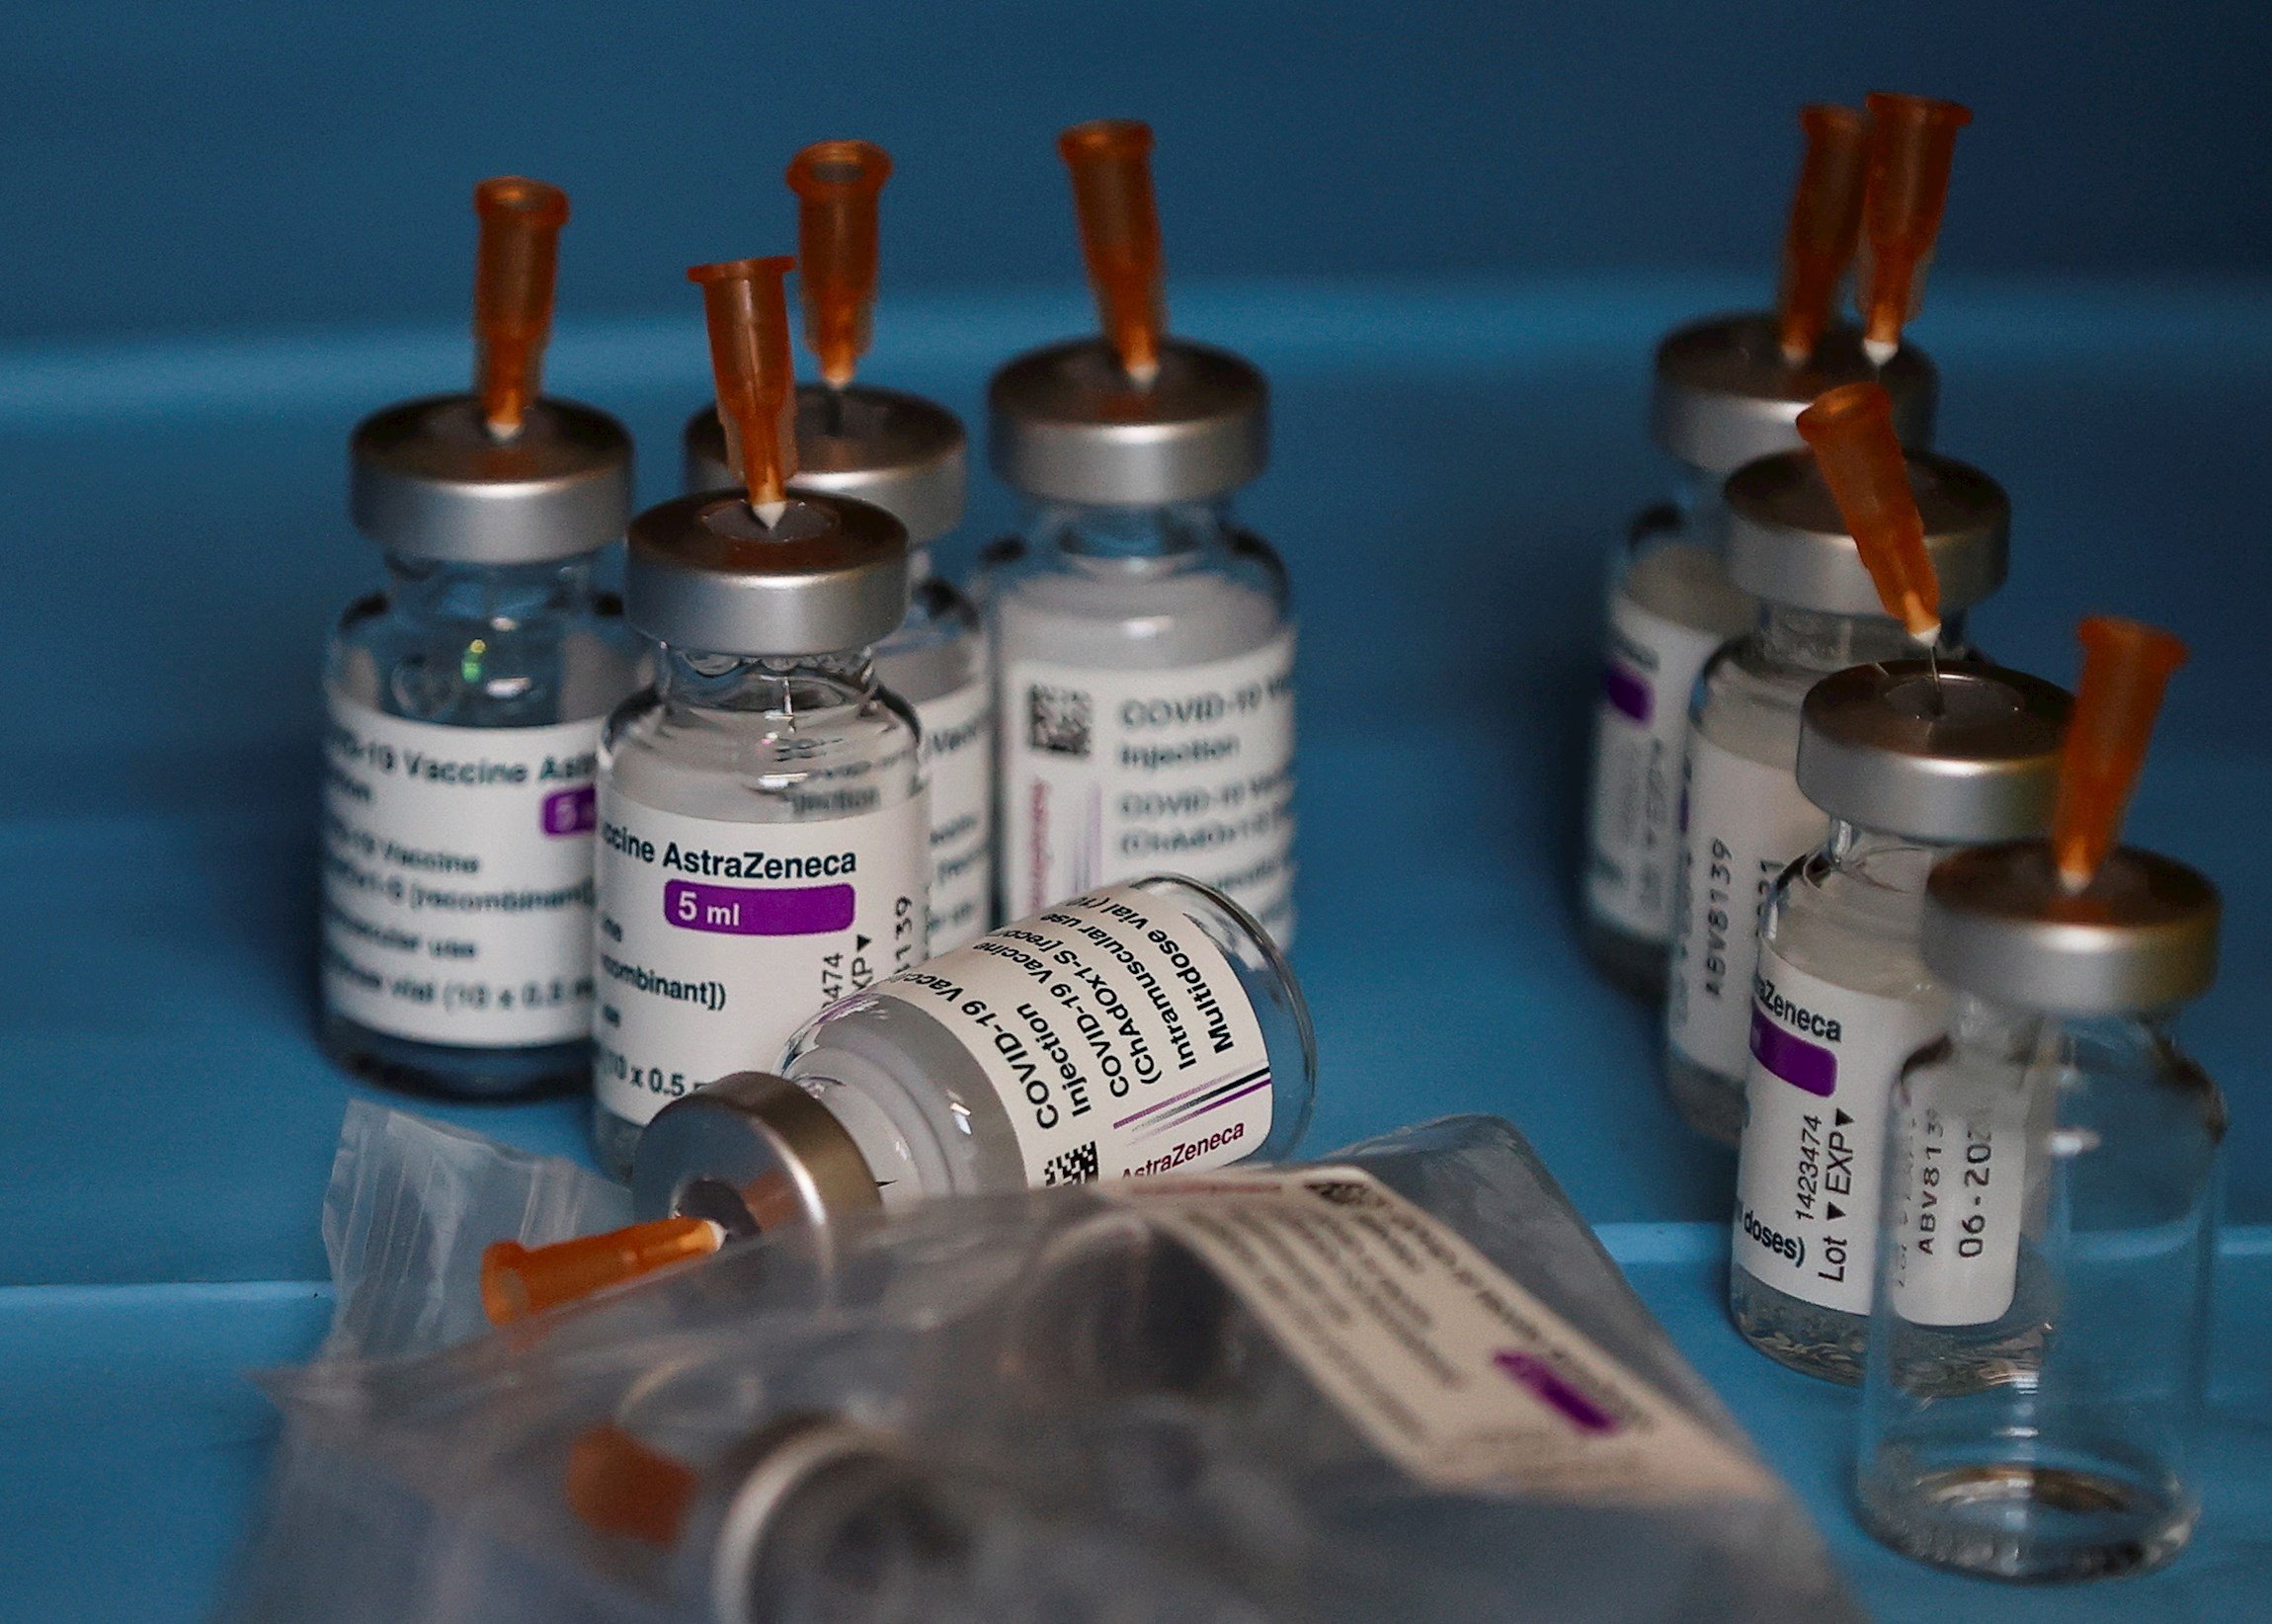 Experts en trombosi defensen la seguretat de la vacuna d’AstraZeneca